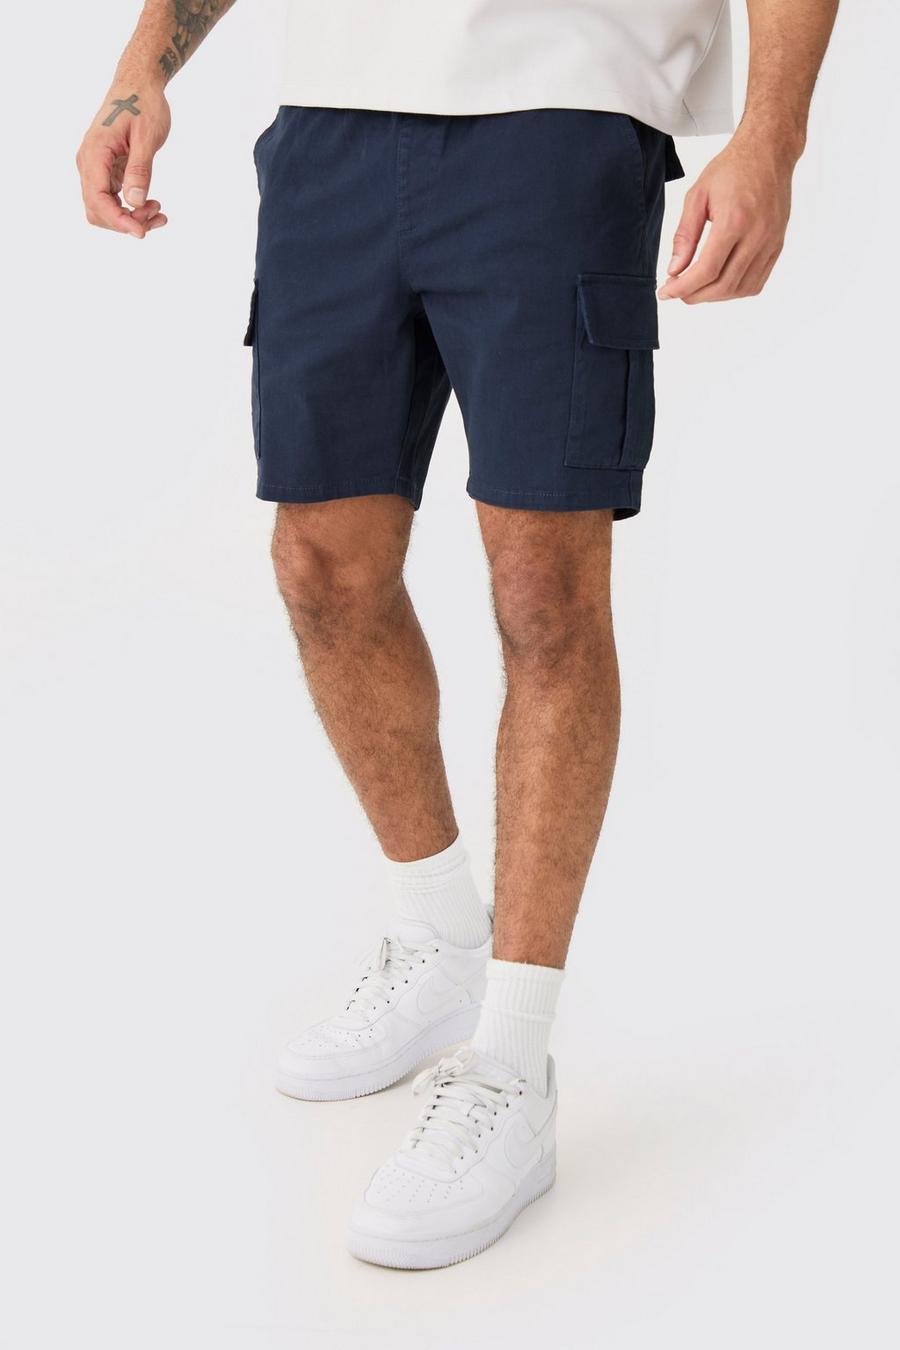 Pantalón corto cargo pitillo azul marino con cintura elástica, Navy